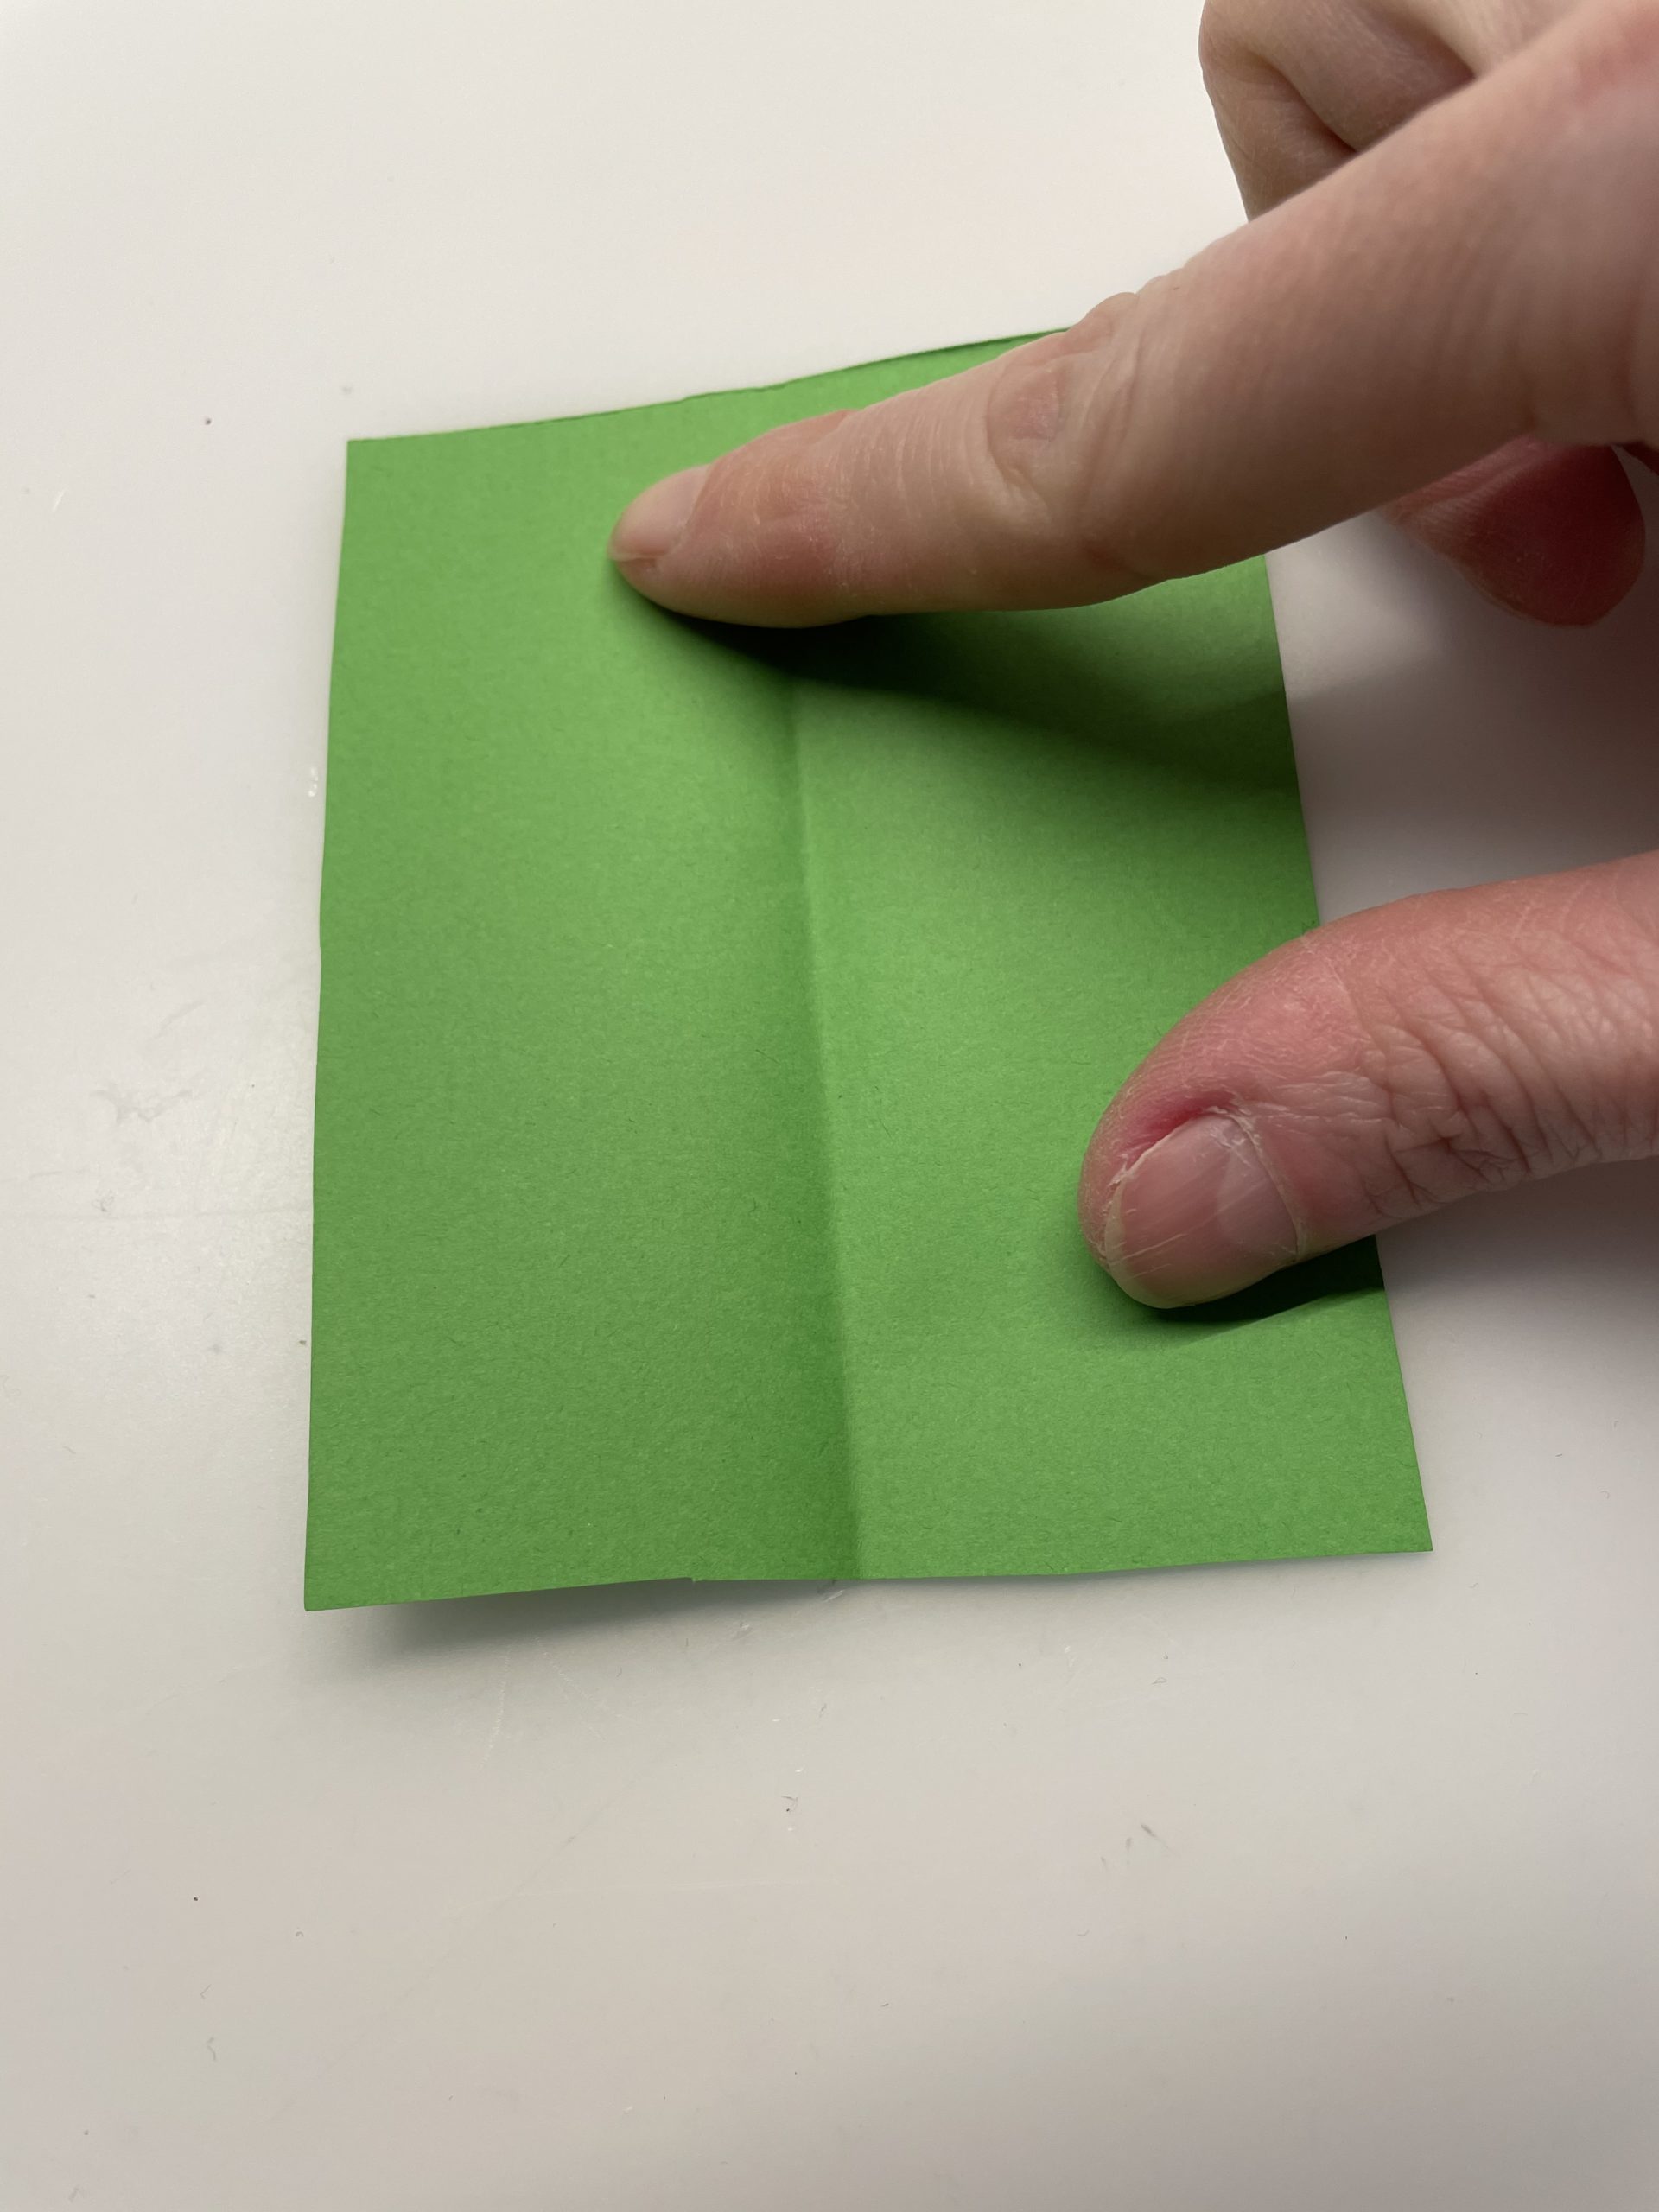 Bild zum Schritt 29 für die Kinder-Beschäftigung: 'Aus grünem Papier könnt ihr jetzt noch ein paar Blätter...'